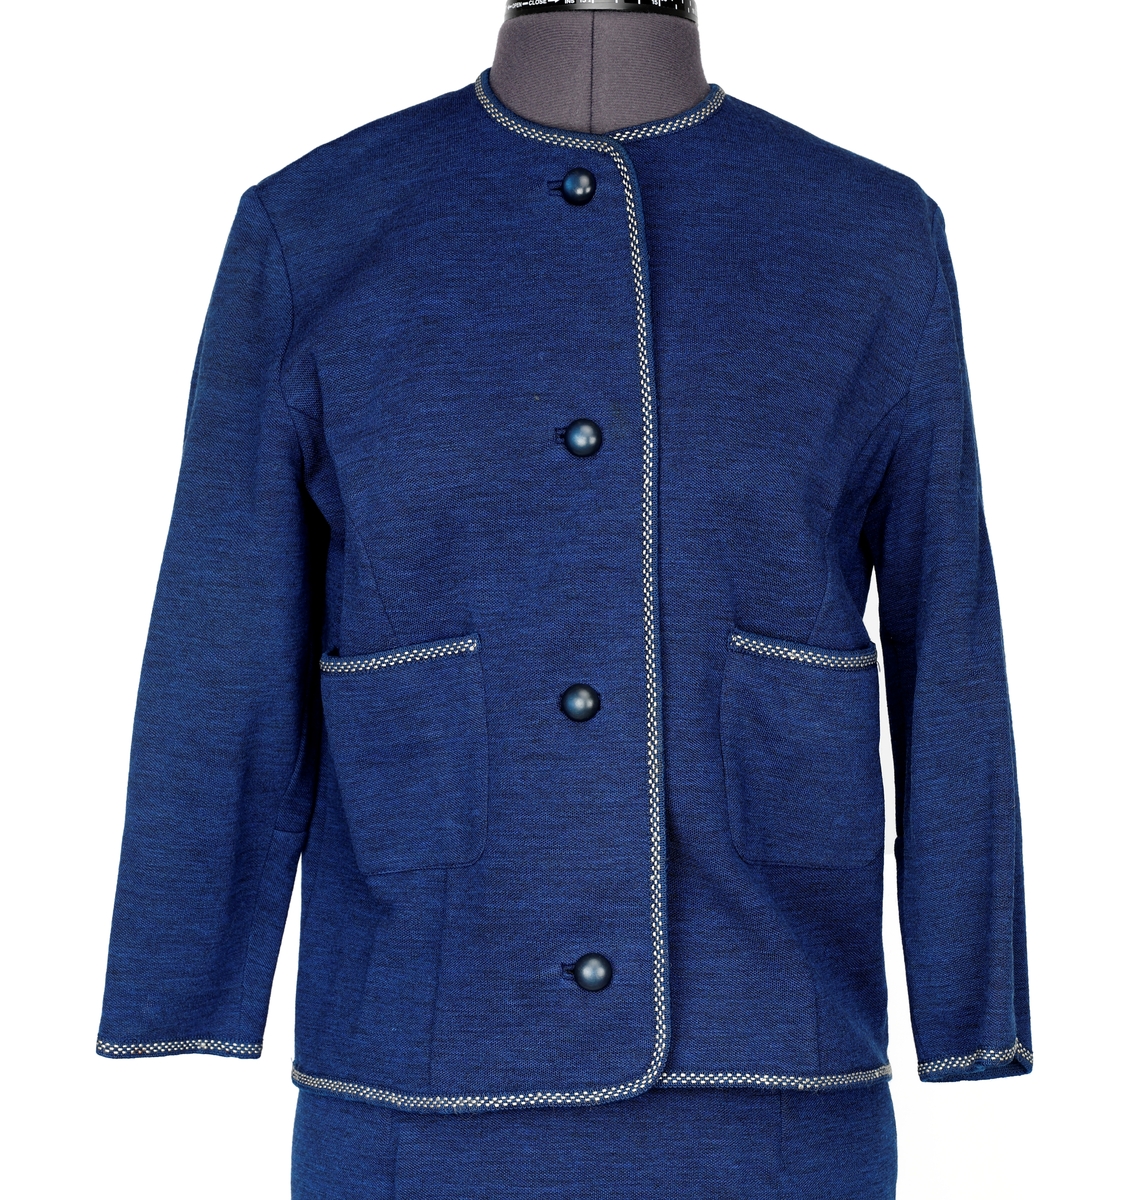 Drakt kjole (jakke og skjørt), fra Canada. 
Jakke: Bånd rundt det hele, på begge sider (holder formen). 4 knapper, 2 lommer sydd på.